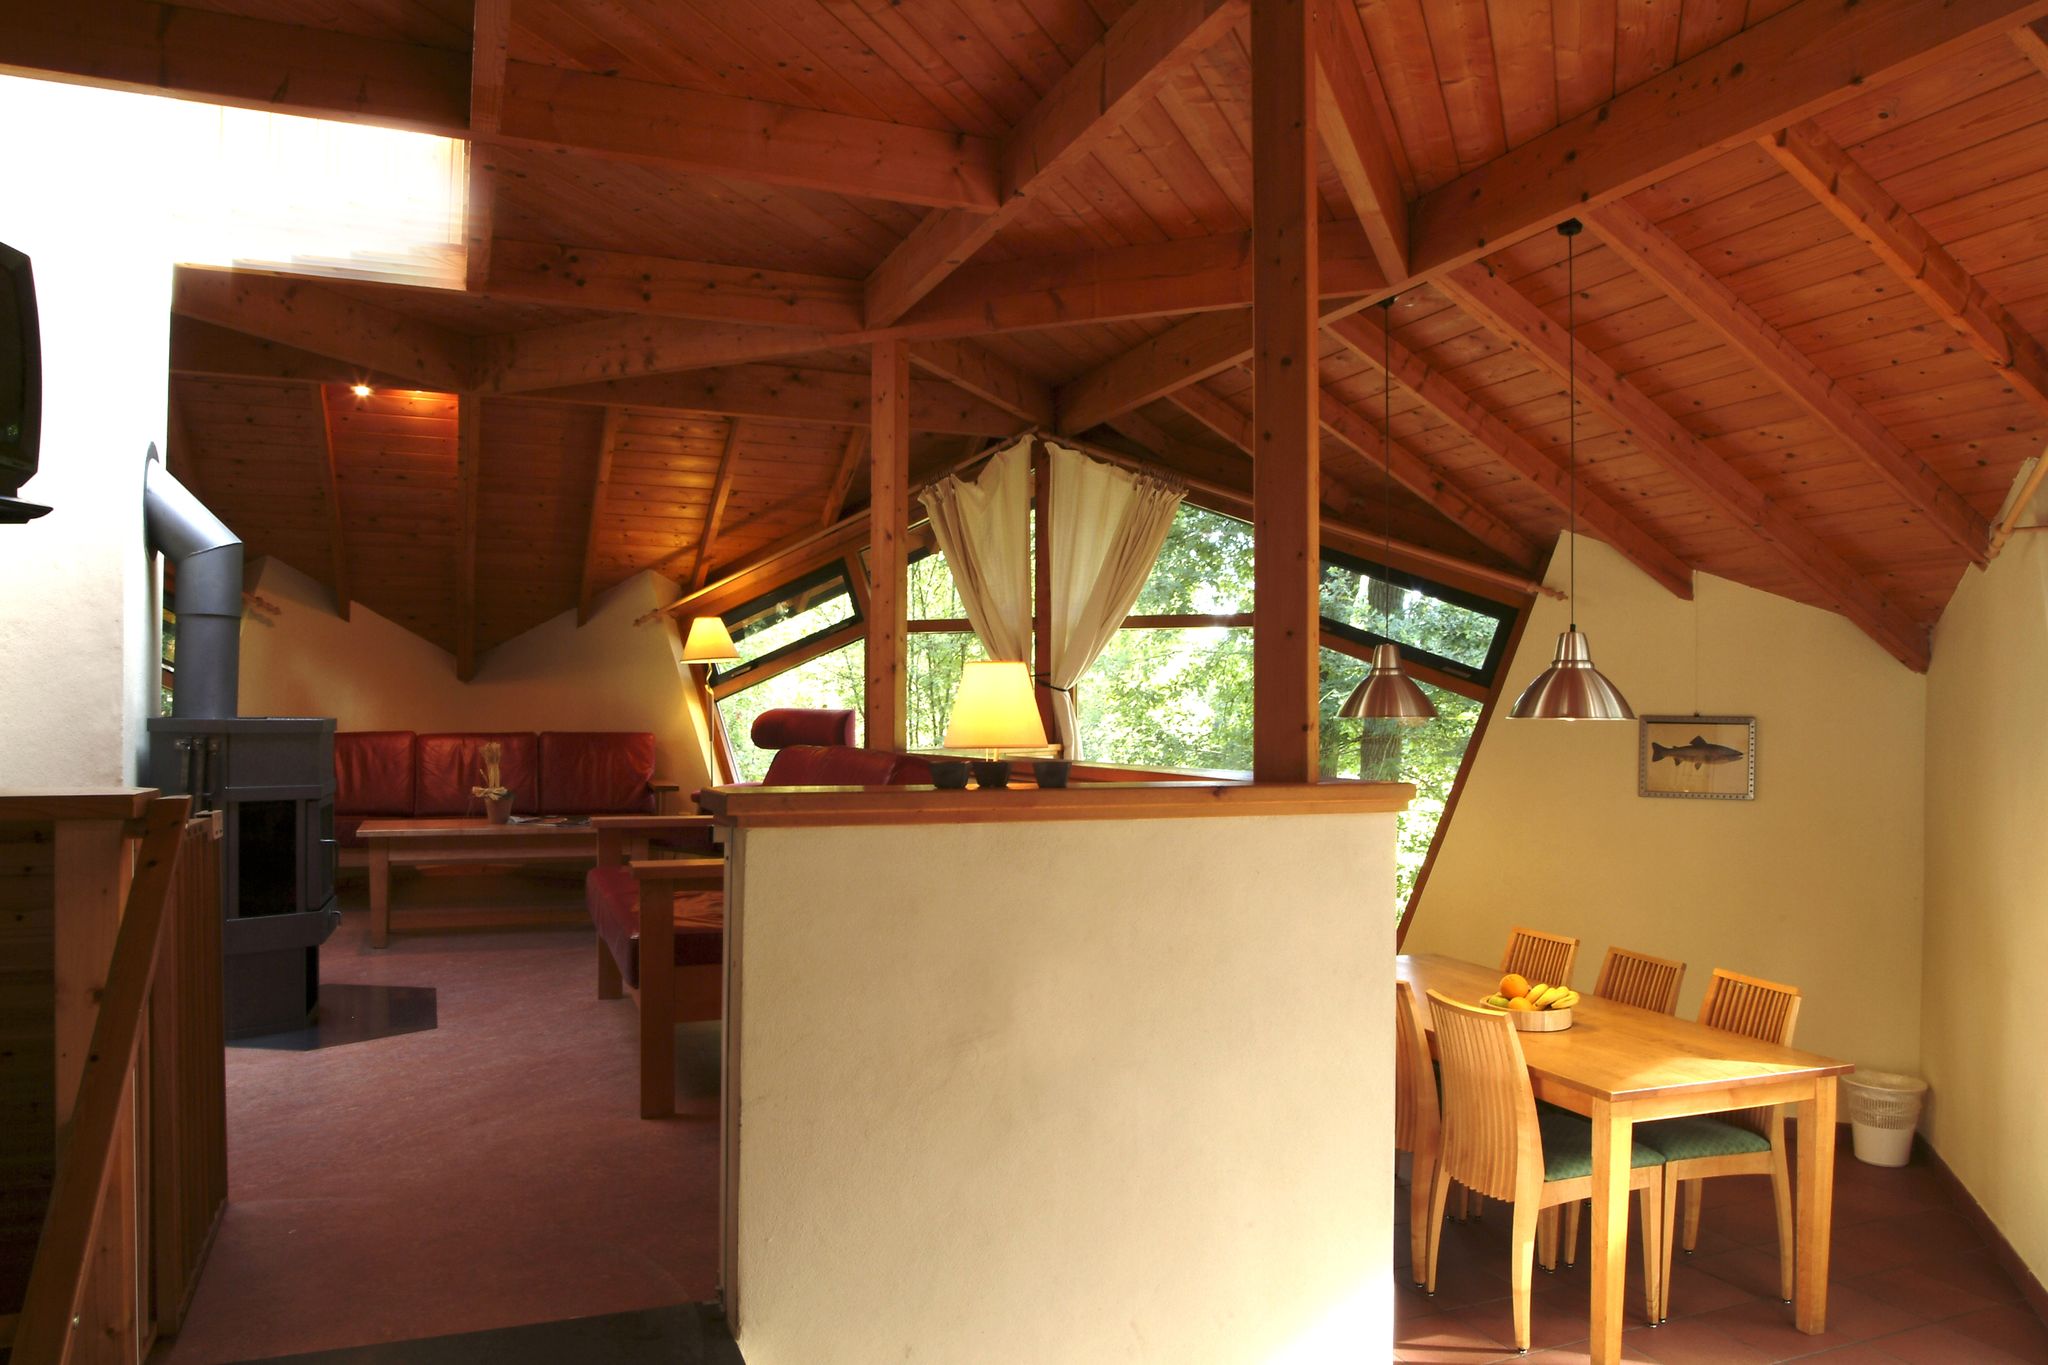 Ökologisches Ferienhaus mit Holzofen, in einem Ferienpark mitten in der Natur